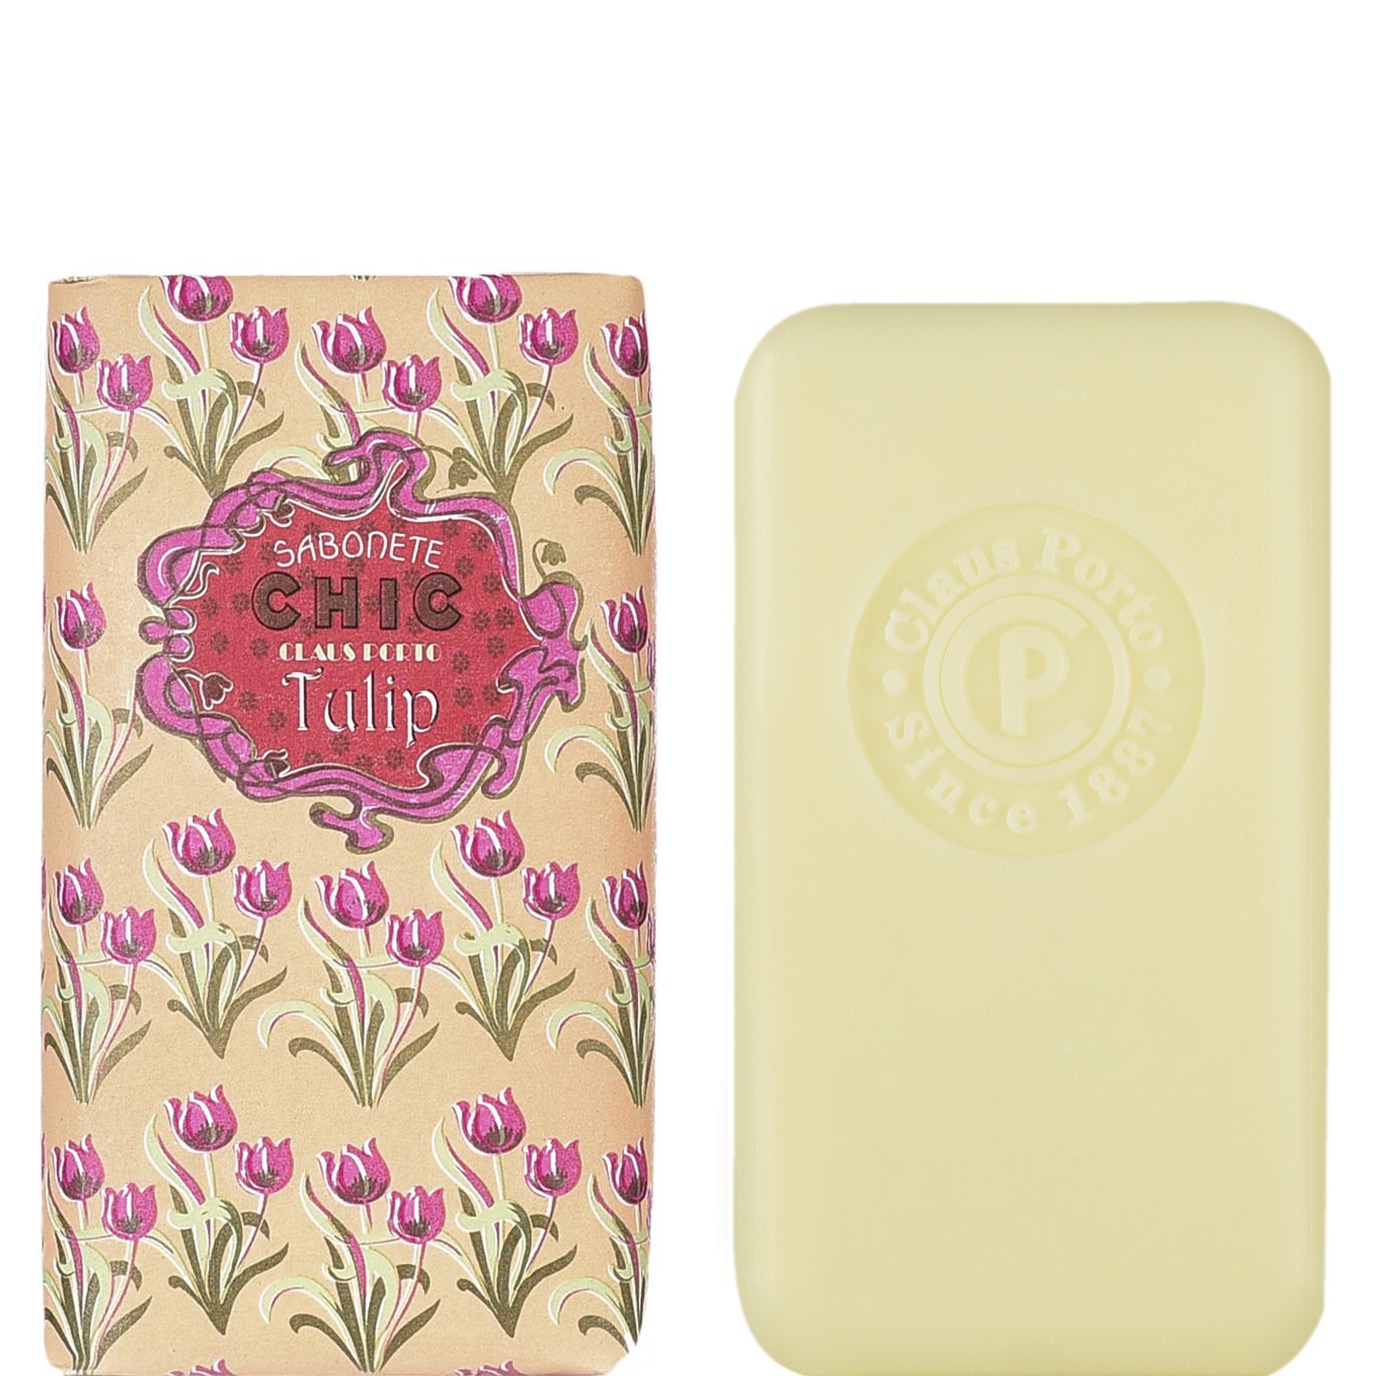 Mini Soap Bar Chic - Tulip